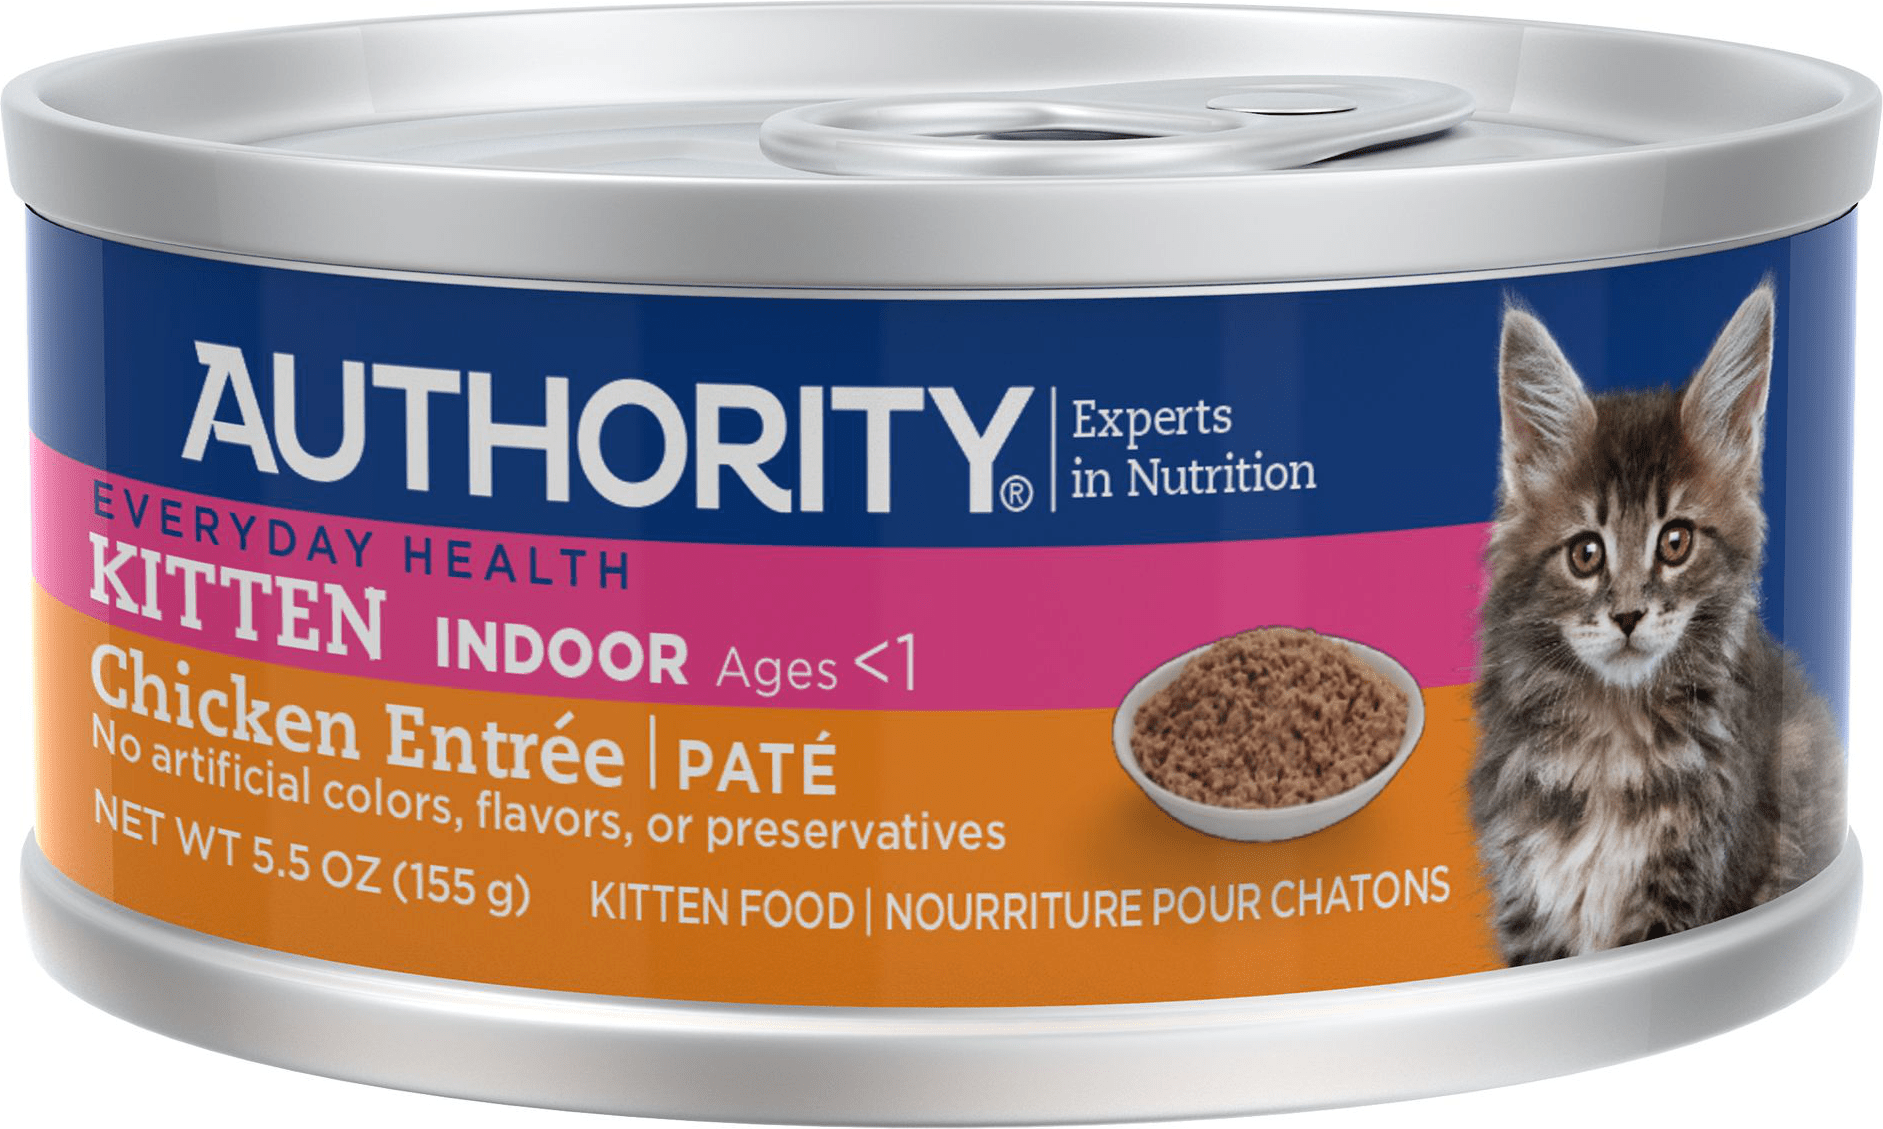 Authority Everyday Health Indoor Kitten Food Chicken